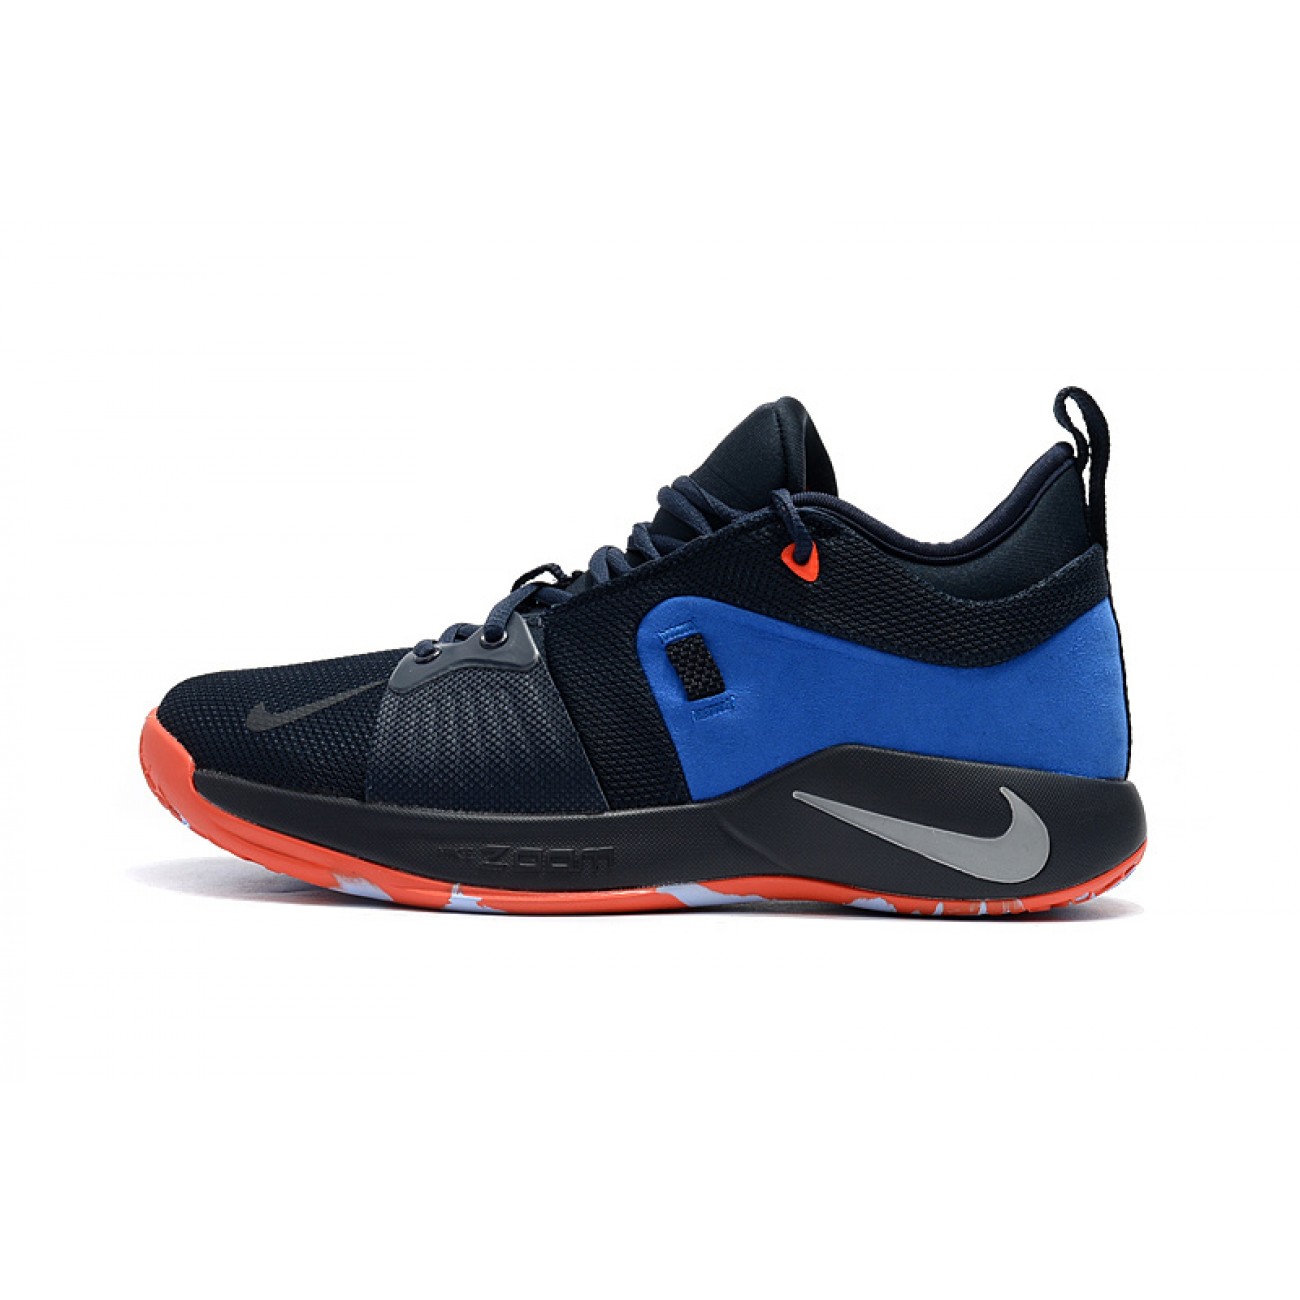 Nike PG 2 Blue/Orange